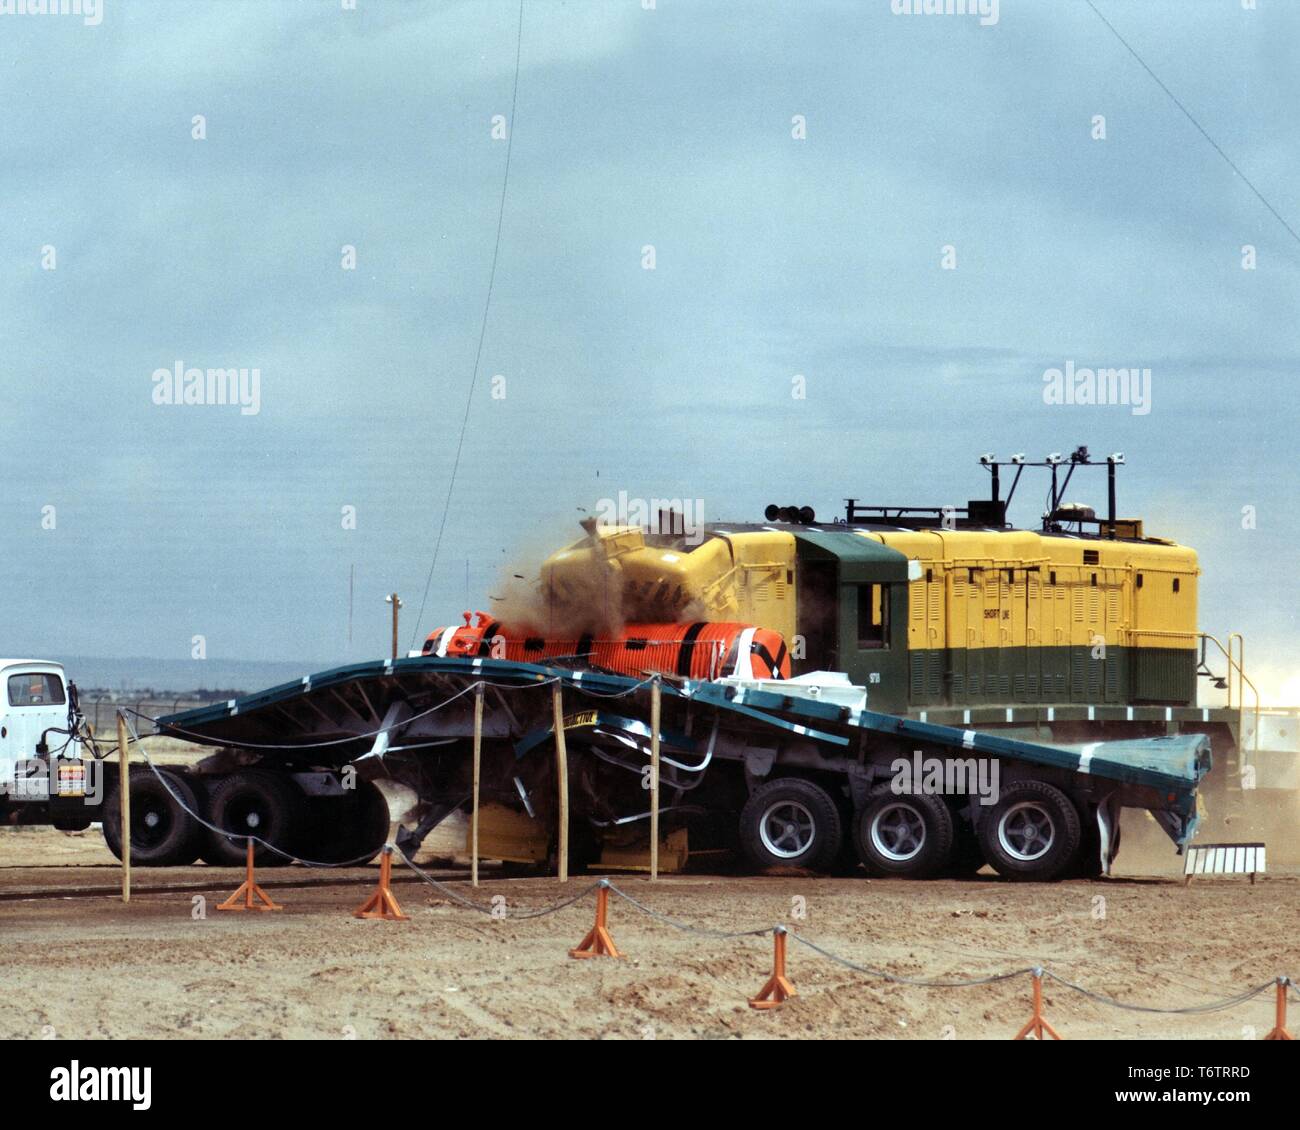 Ein Zug auf einem Tieflader eine abgebrannte Brennelemente cask während eines 82-Meile pro Stunde - Kreuzung test, Albuquerque, New Mexico, 1978. Mit freundlicher Genehmigung des US-Ministeriums für Energie. () Stockfoto